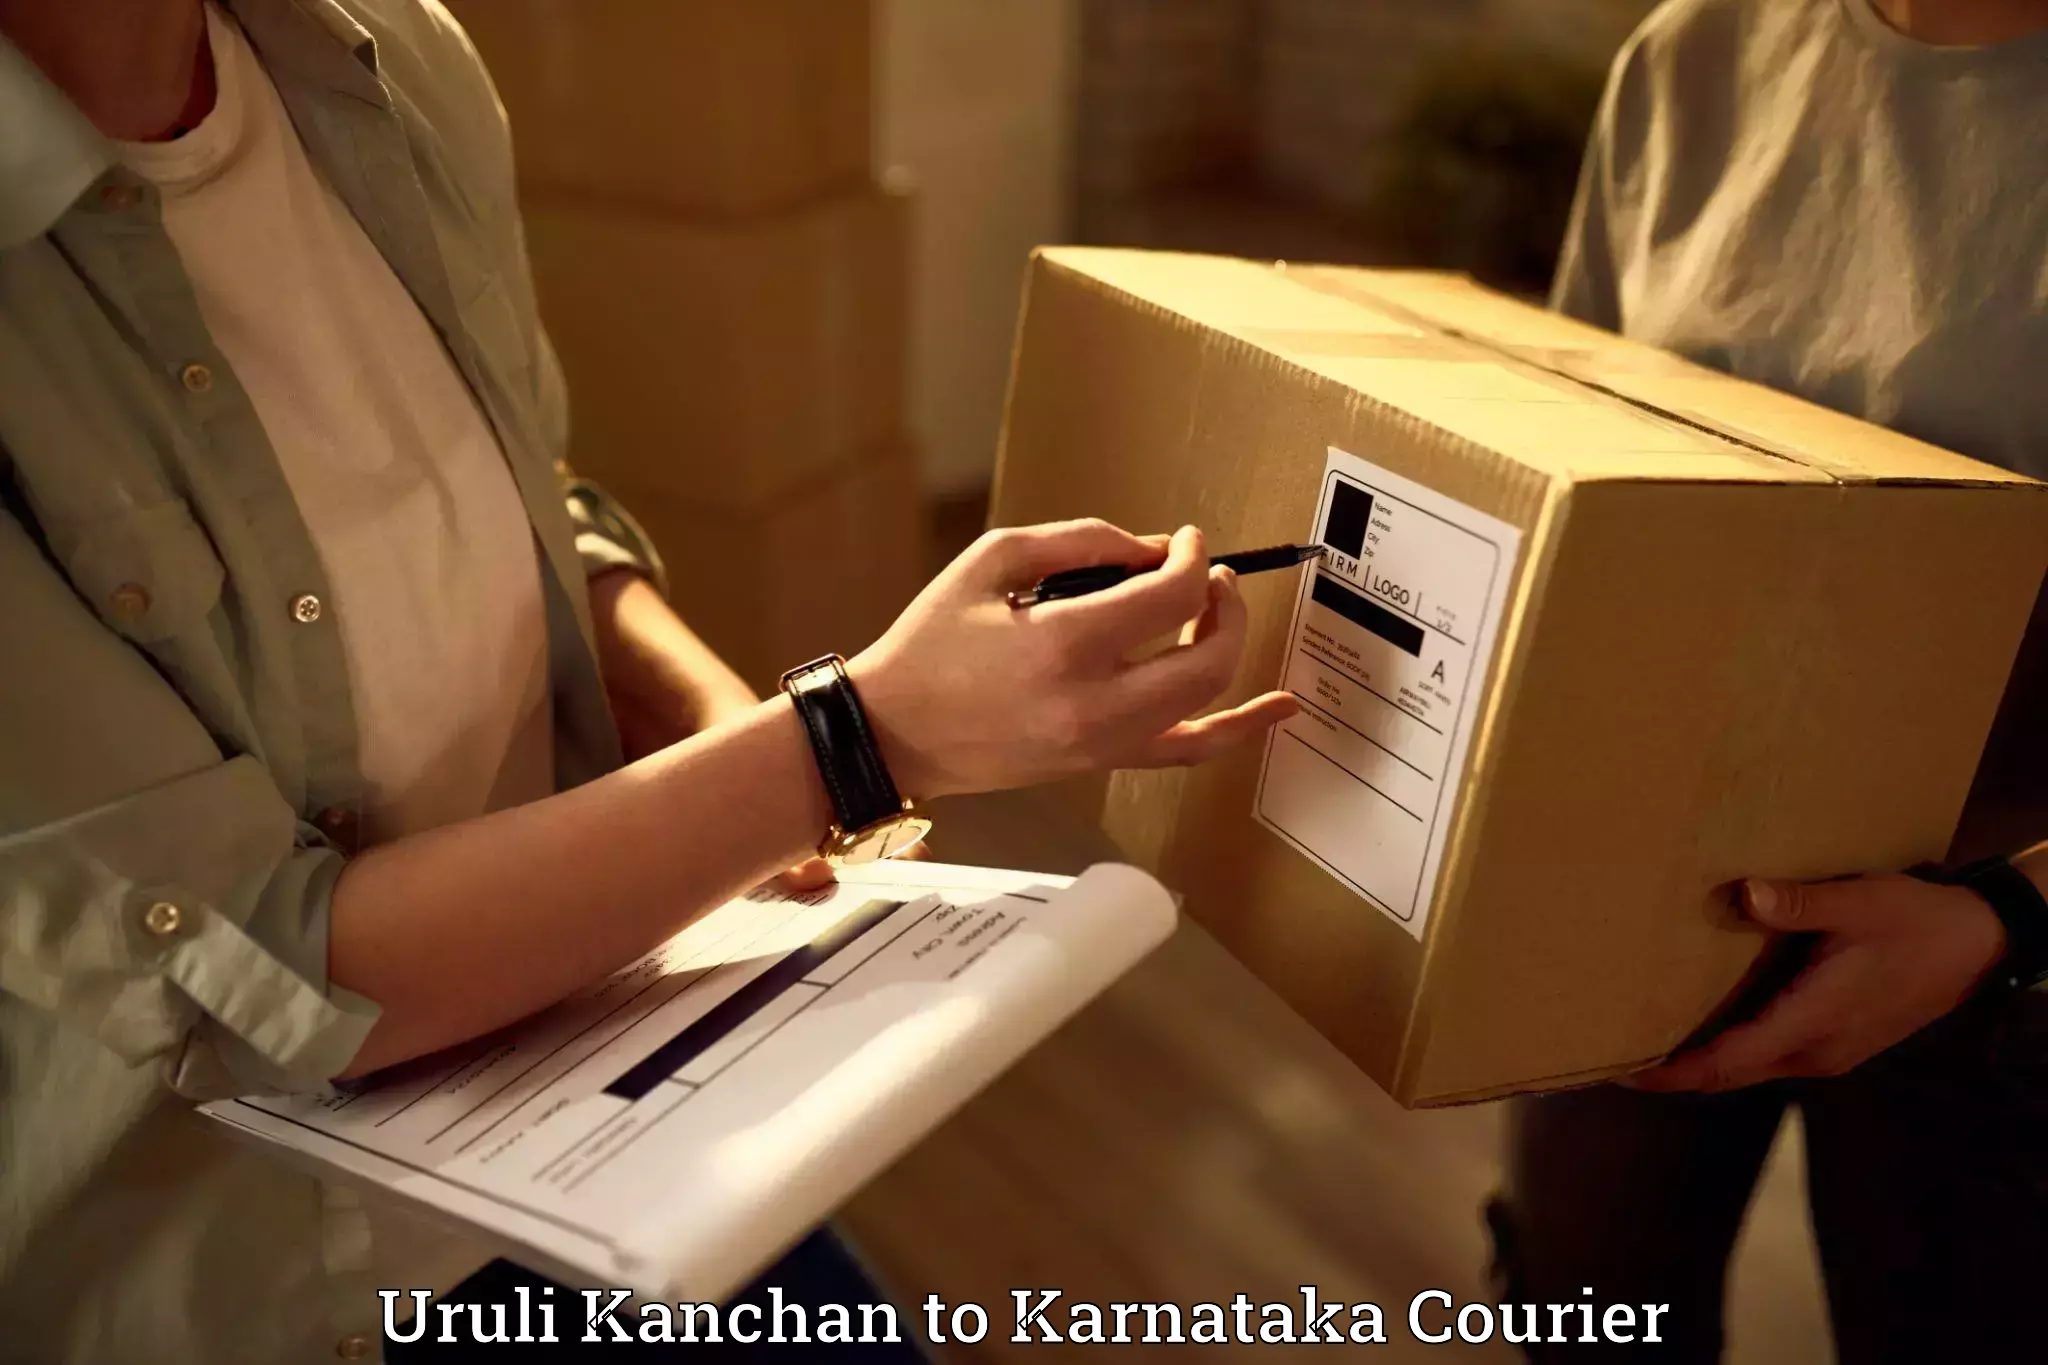 Furniture transport experts Uruli Kanchan to Karnataka